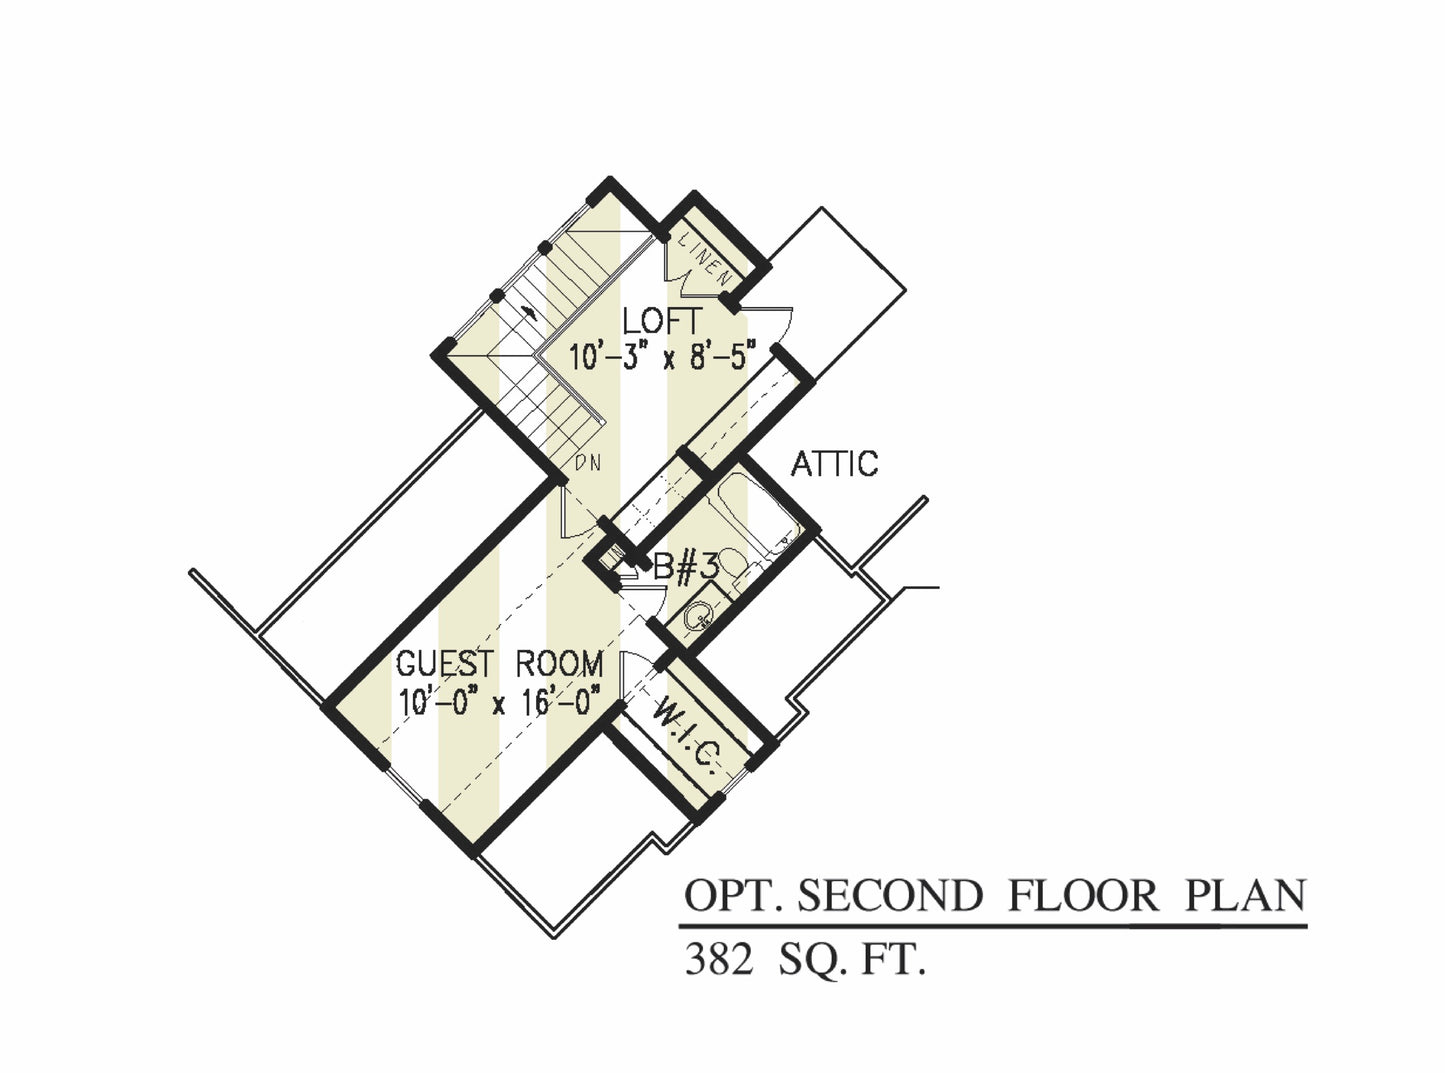 Opt. 2nd FLOOR PLAN - 22028 Floor_Plan